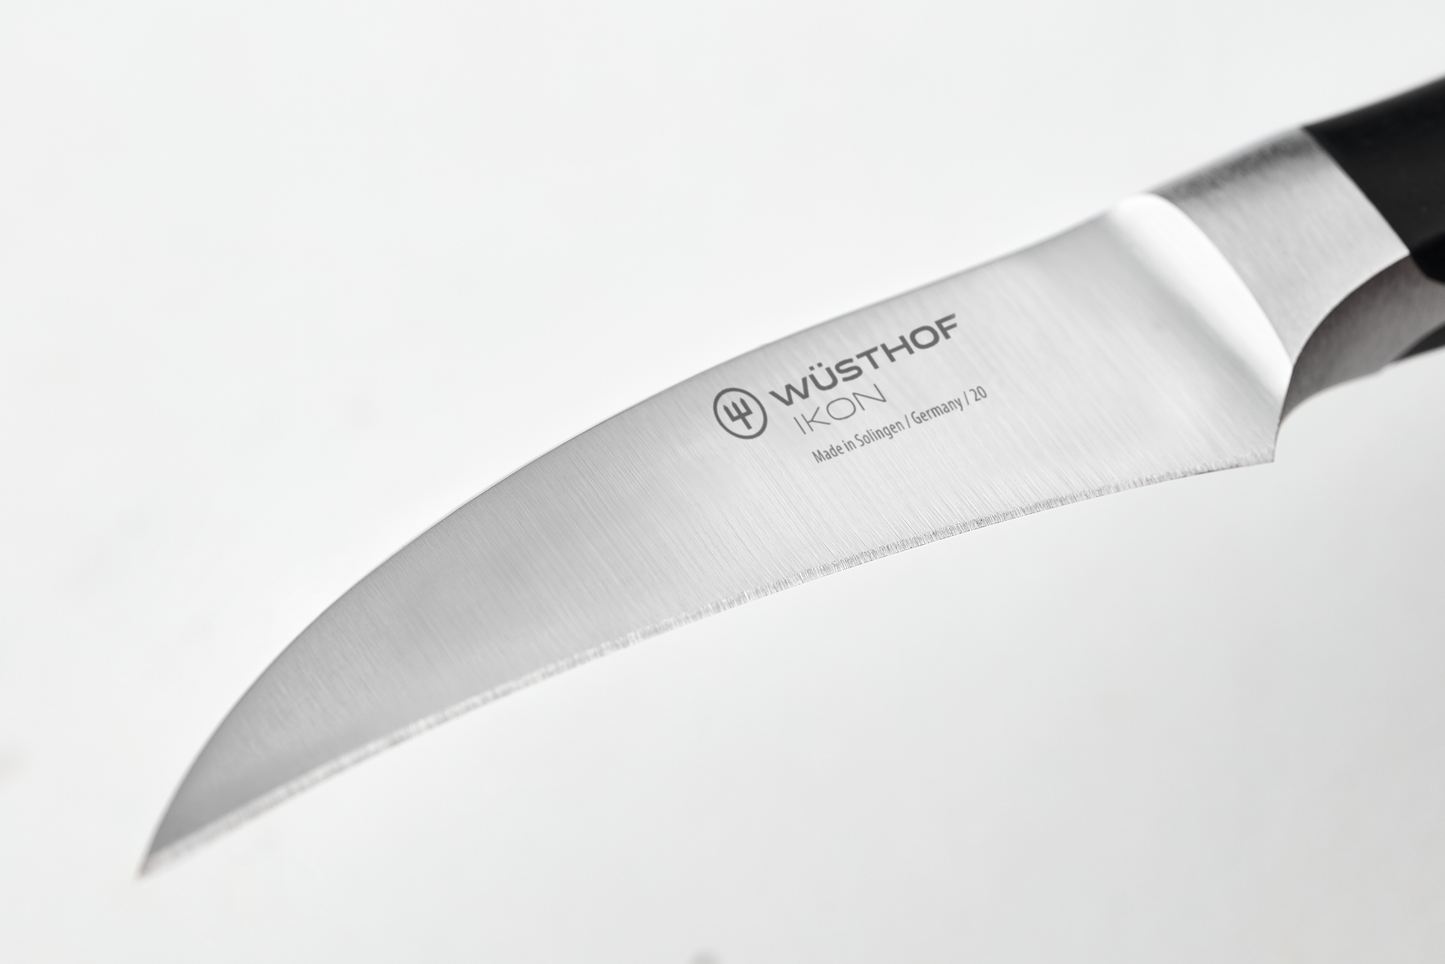 Ikon Peeling Knife 7 cm | 2 3/4 inch